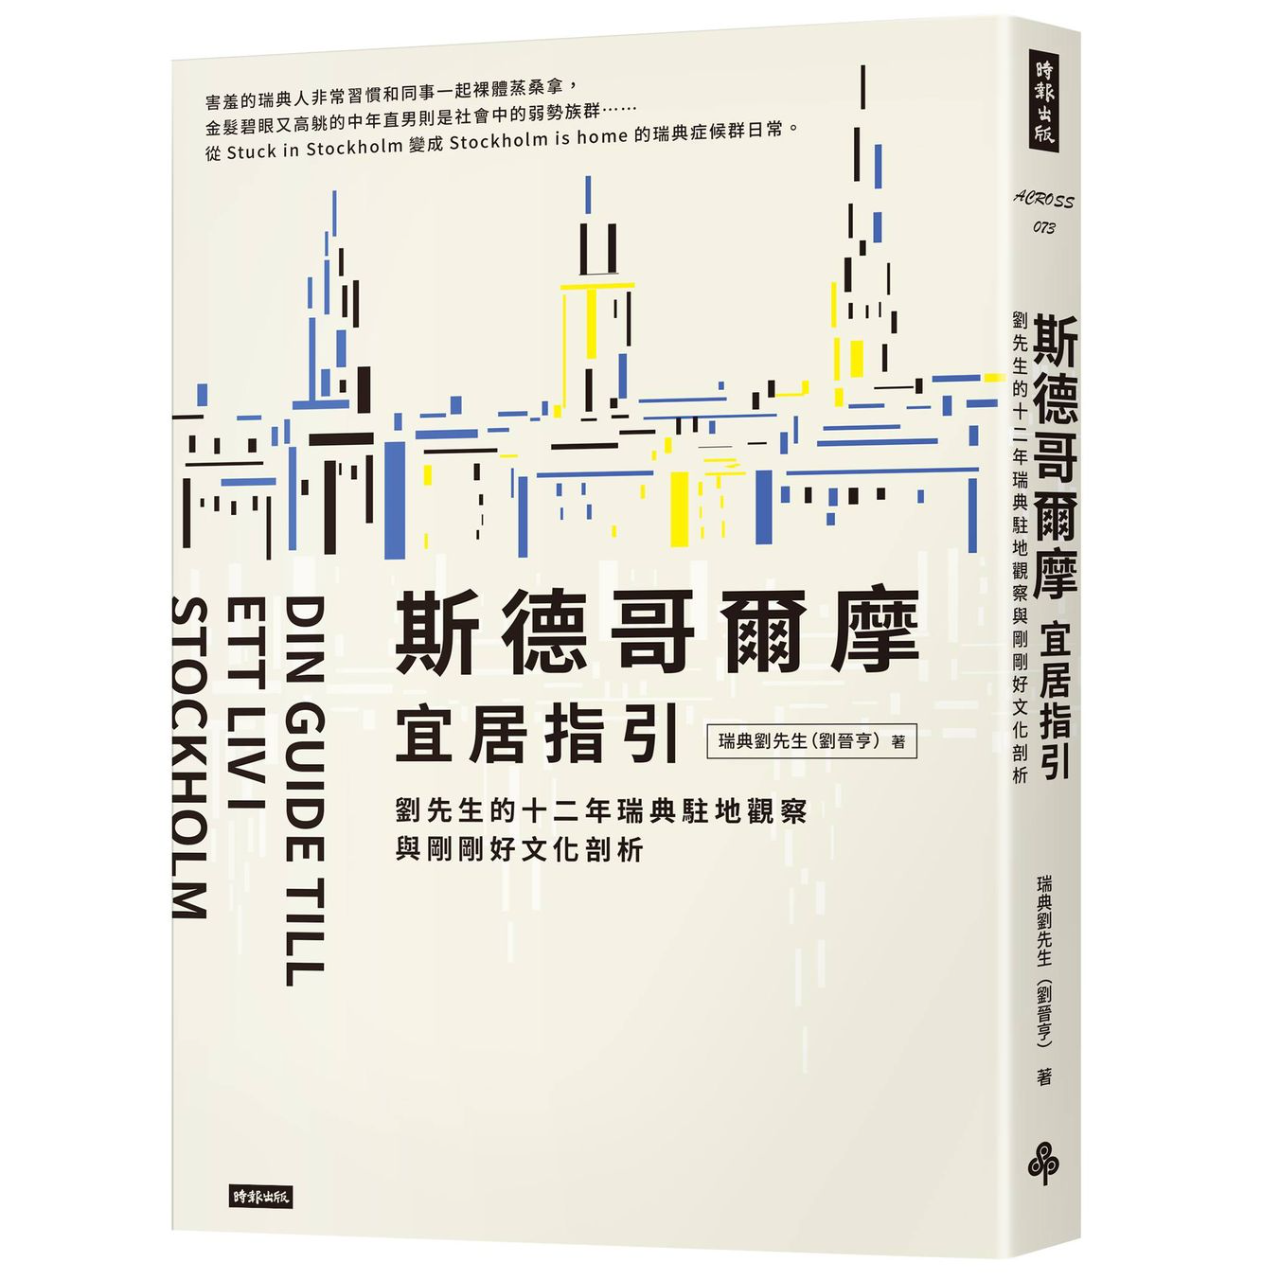 瑞典劉先生 / David Liu / 劉晉亨 各大書店、網路書店、電子書平台已上架